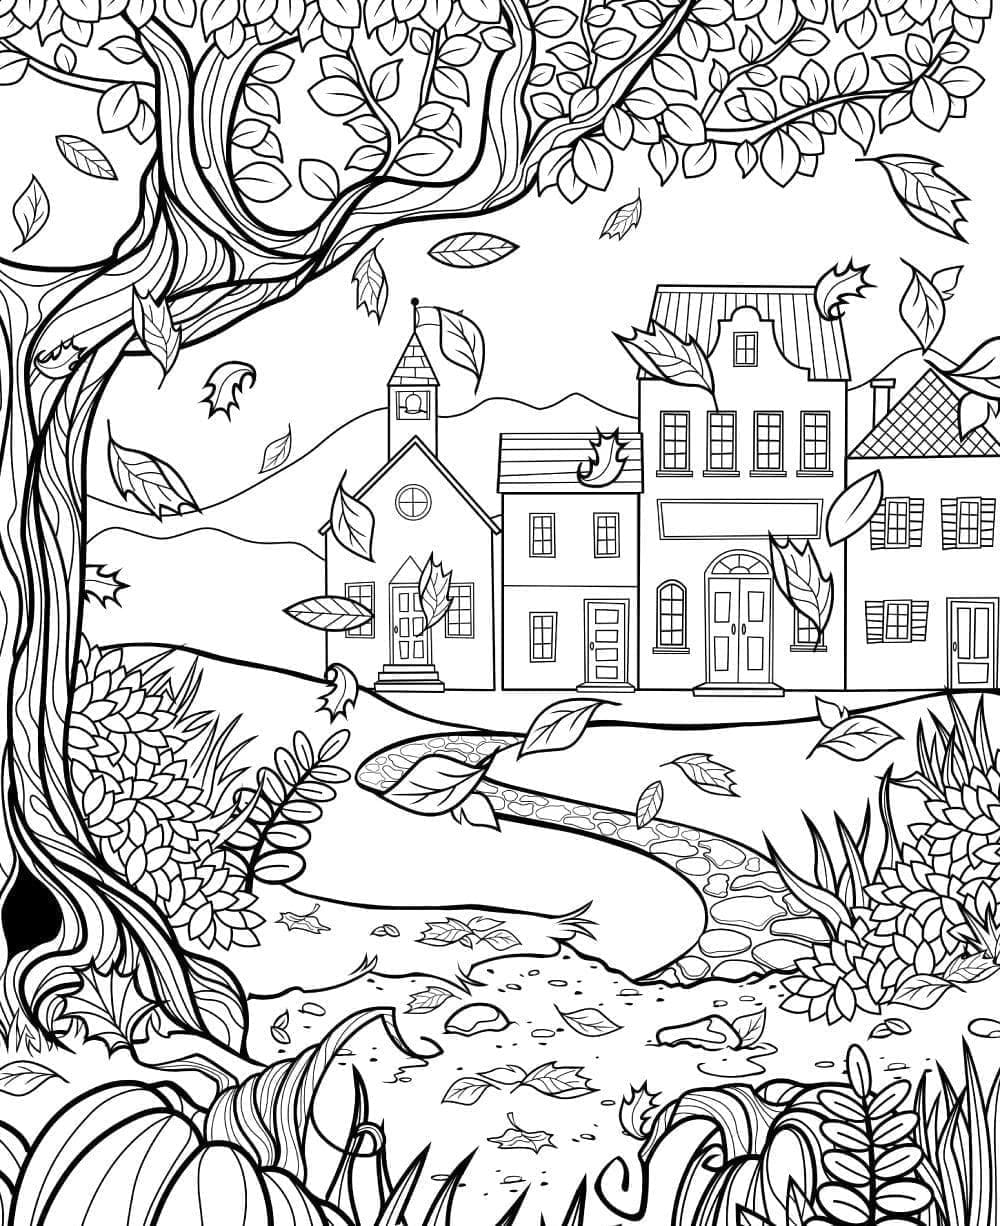 단풍이 있는 아름다운 풍경 coloring page